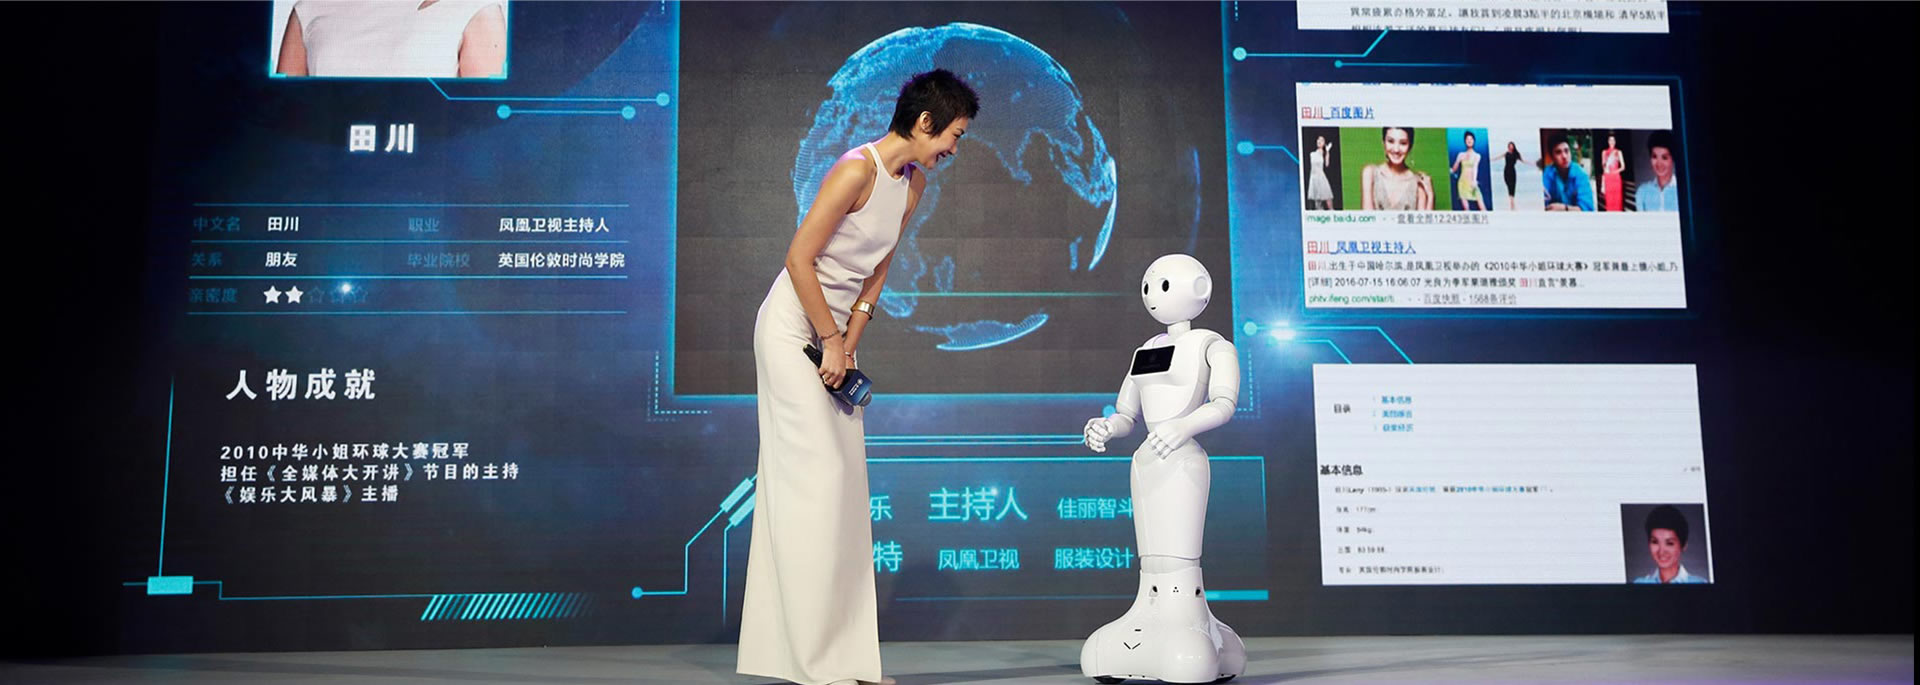 弗兰奇迎宾智能机器人在某大型活动与主持人互动